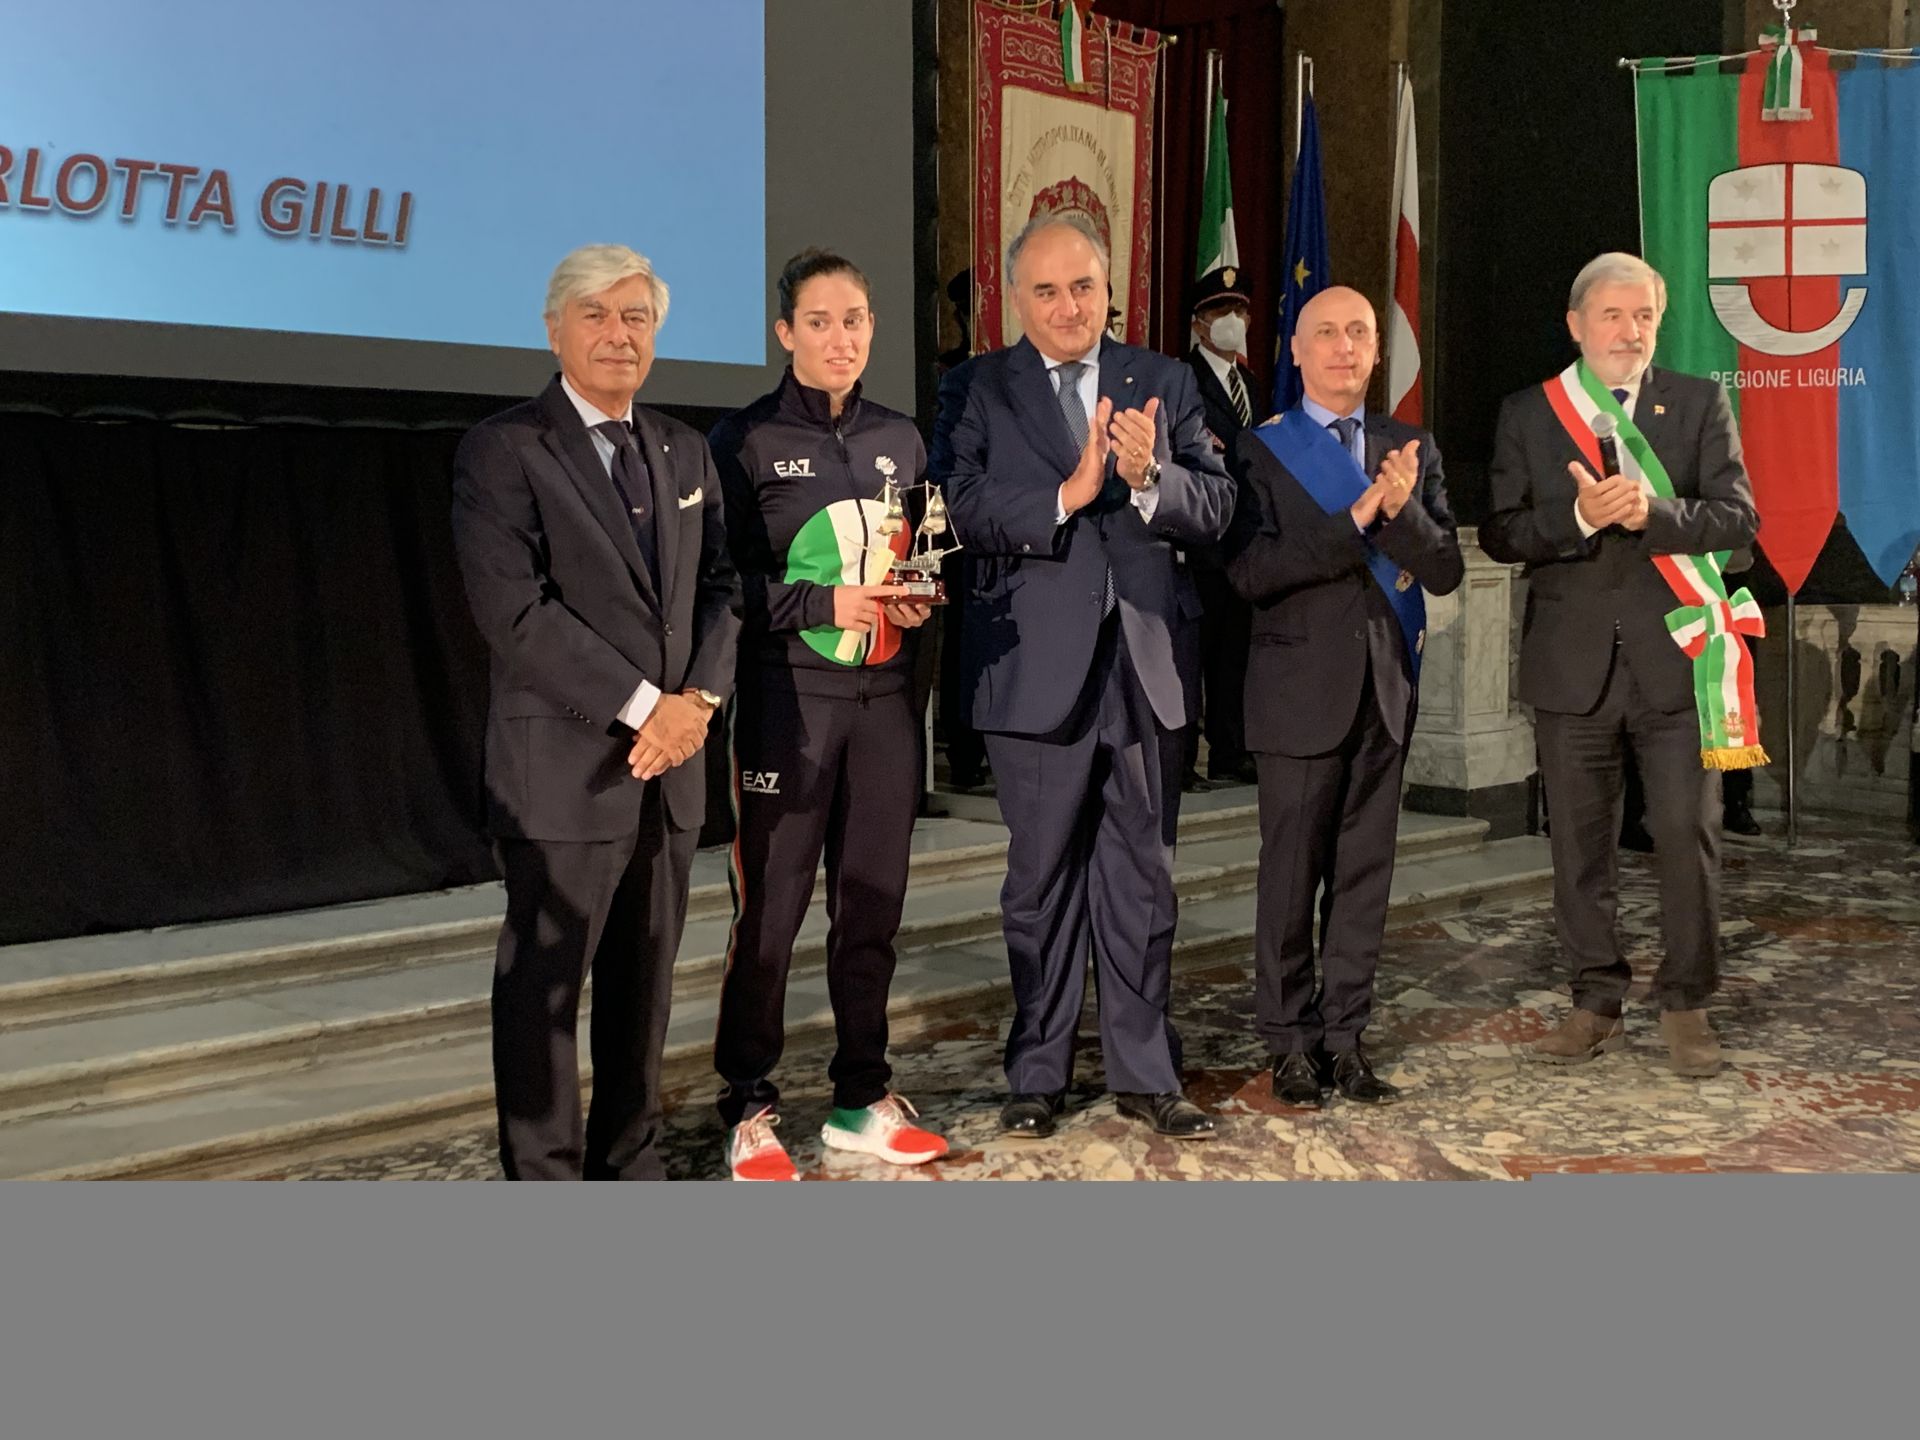 Dalle medaglie di Tokyo a Genova, a Carlotta Gilli il Premio internazionale dello sport